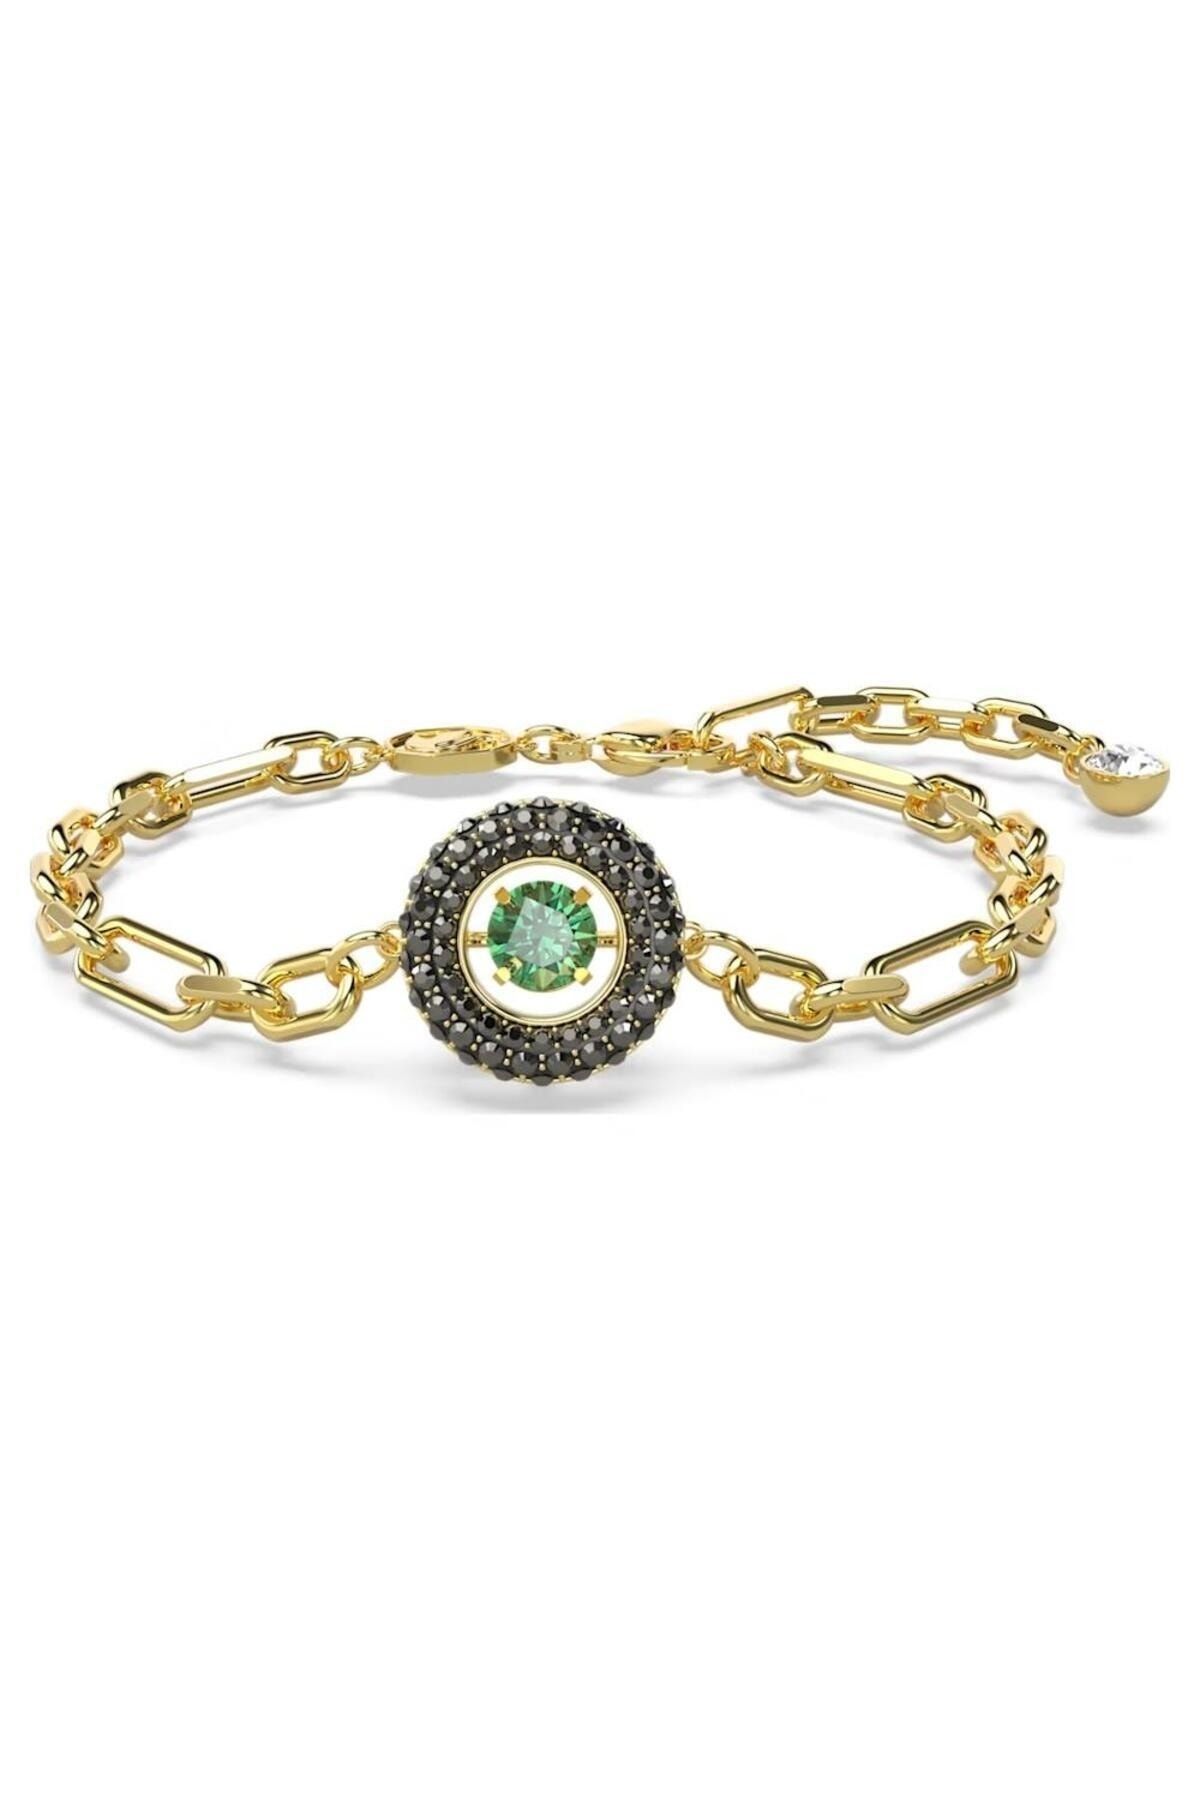 Swarovski 5665237 Swarovski Bilezik Swarovski Sparkling Dance bracelet, Green, Gold-tone plated